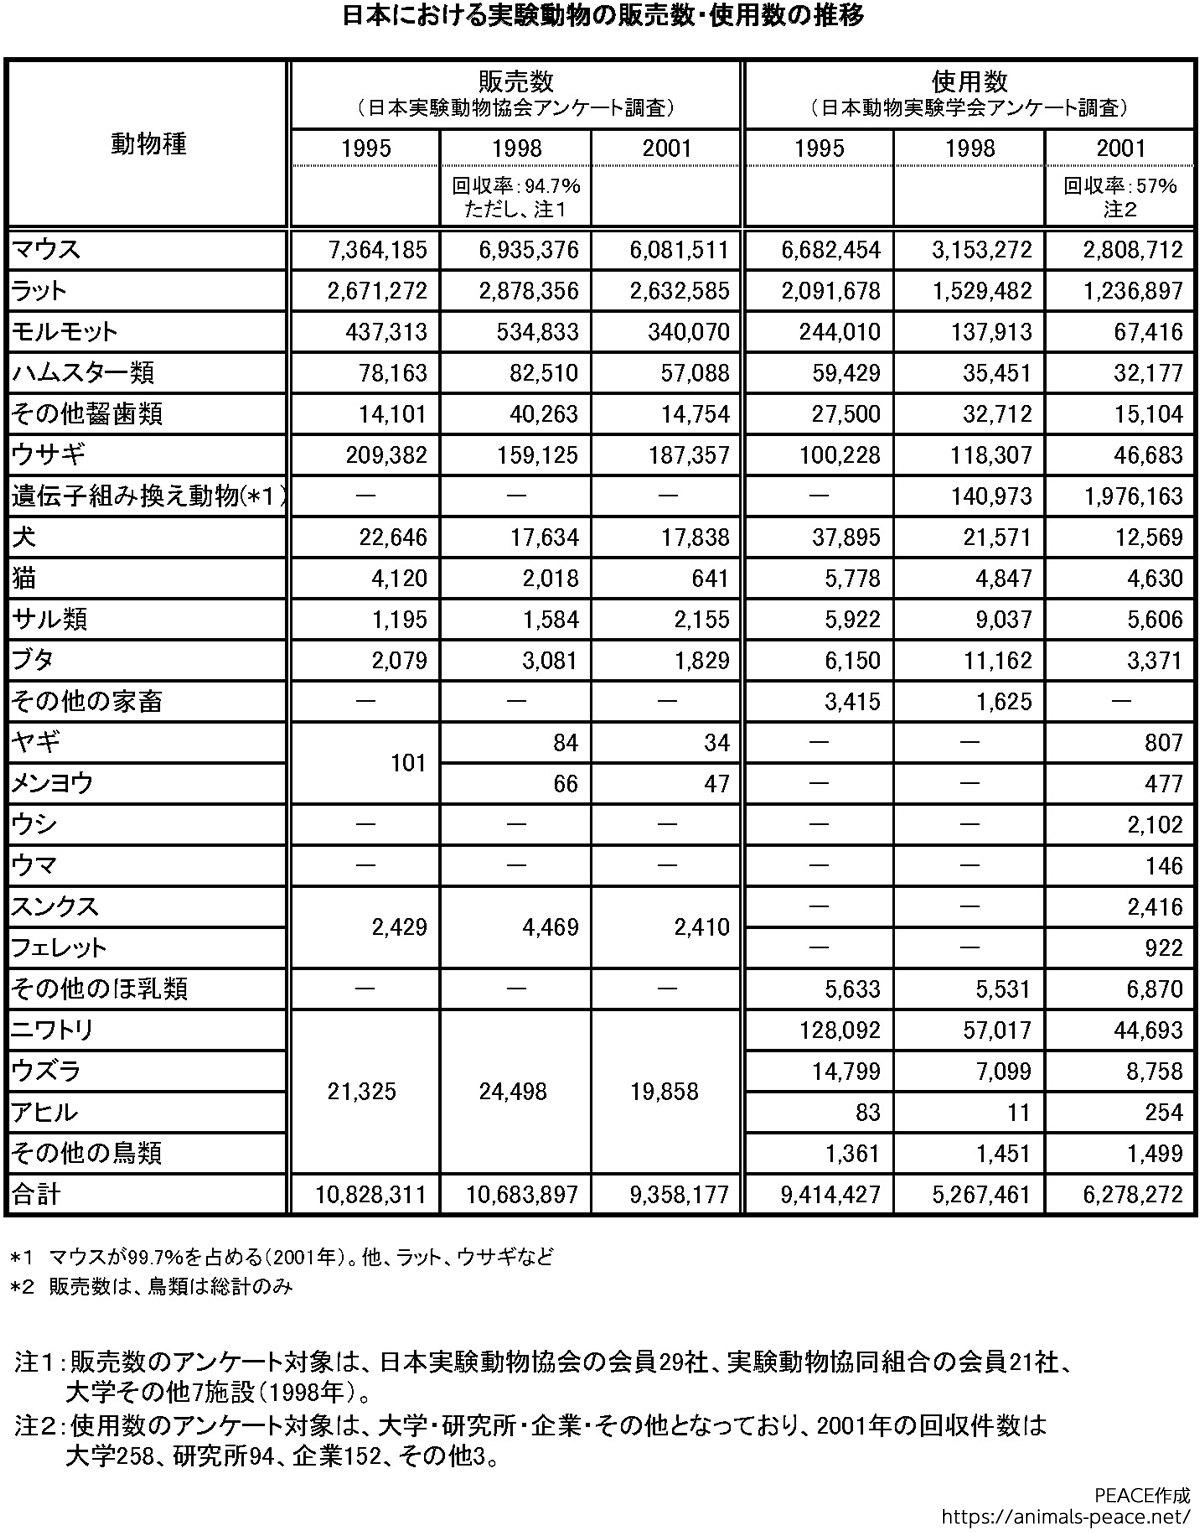 日本における実験動物の販売数・使用数の推移（1995-2001）